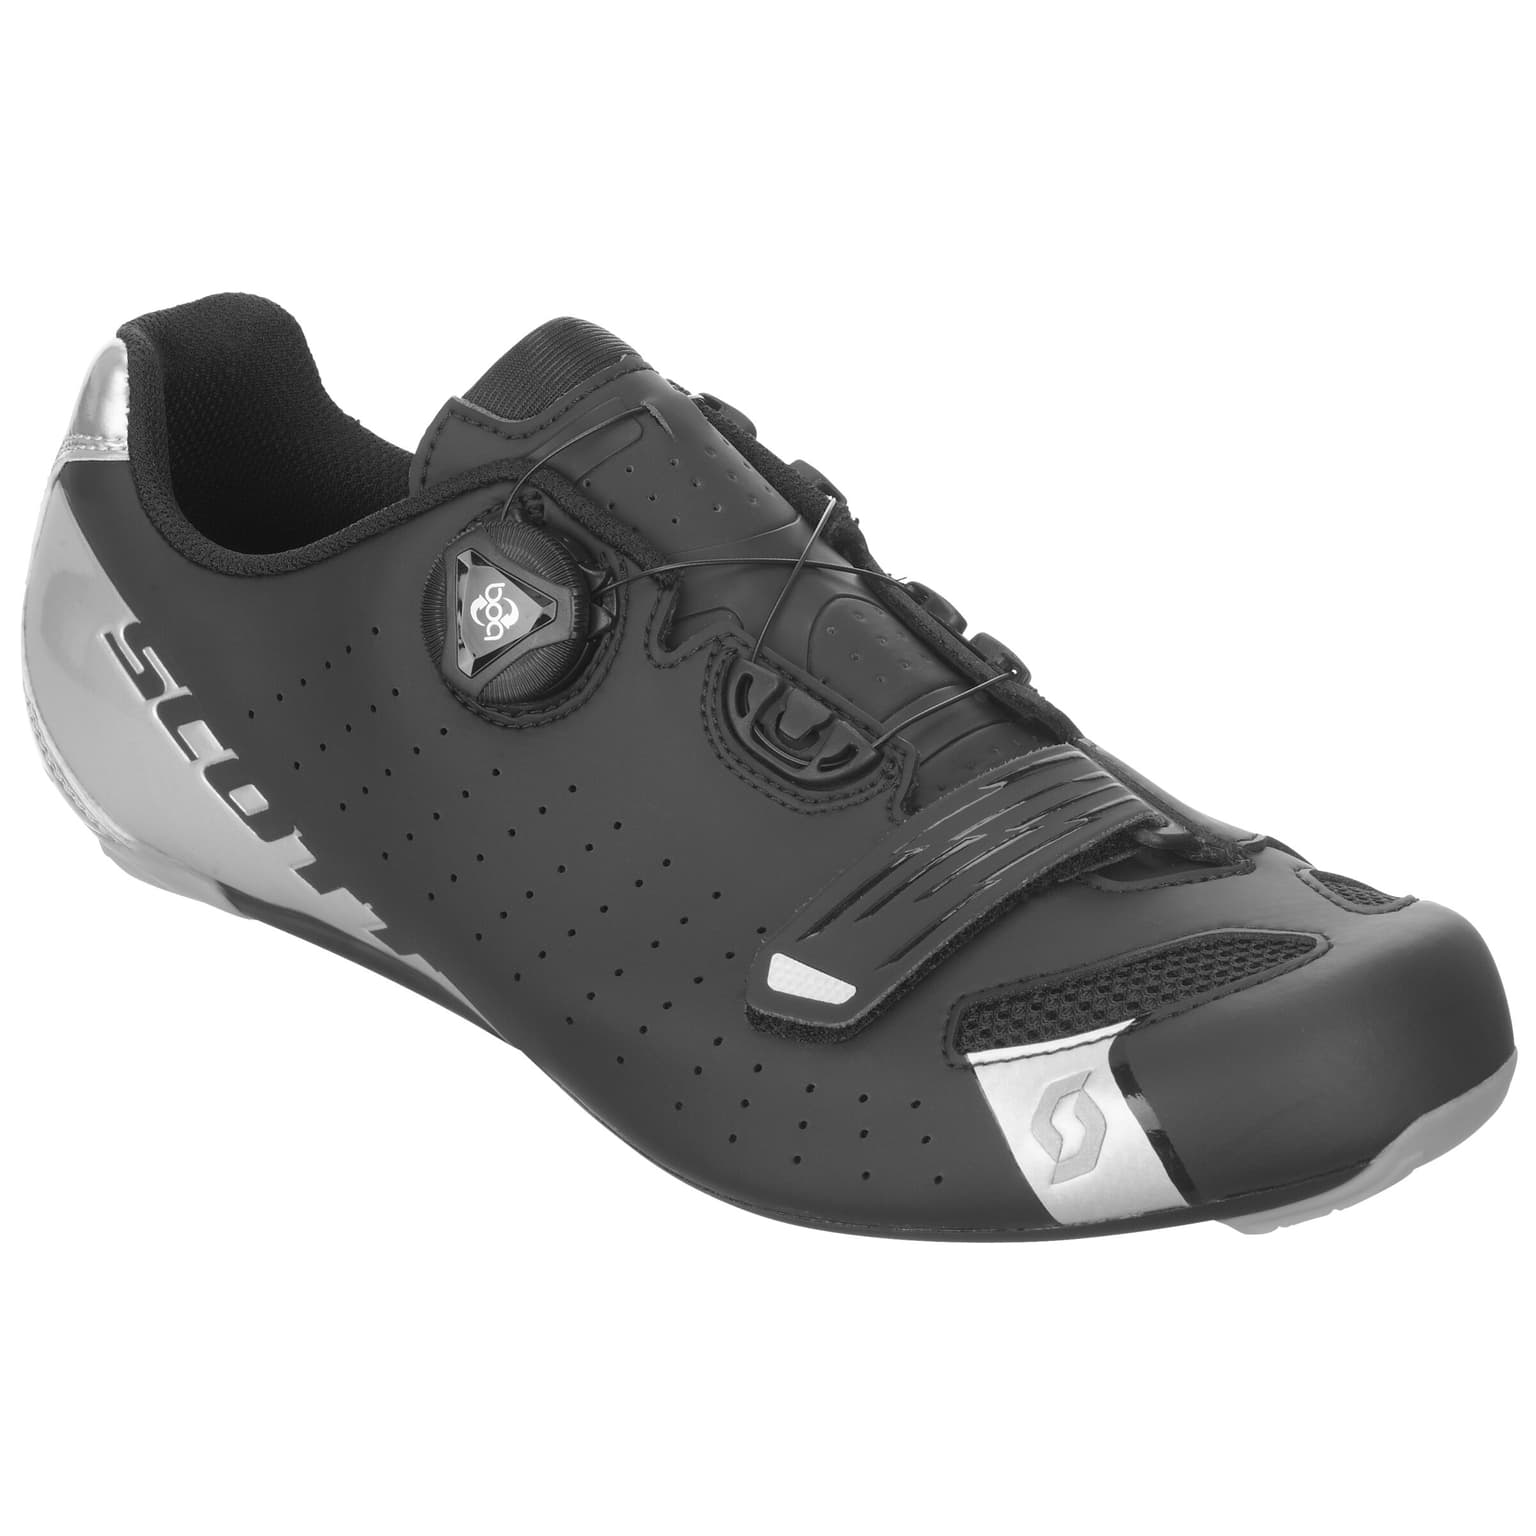 Scott Scott Road Comp Boa Chaussures de cyclisme noir 2